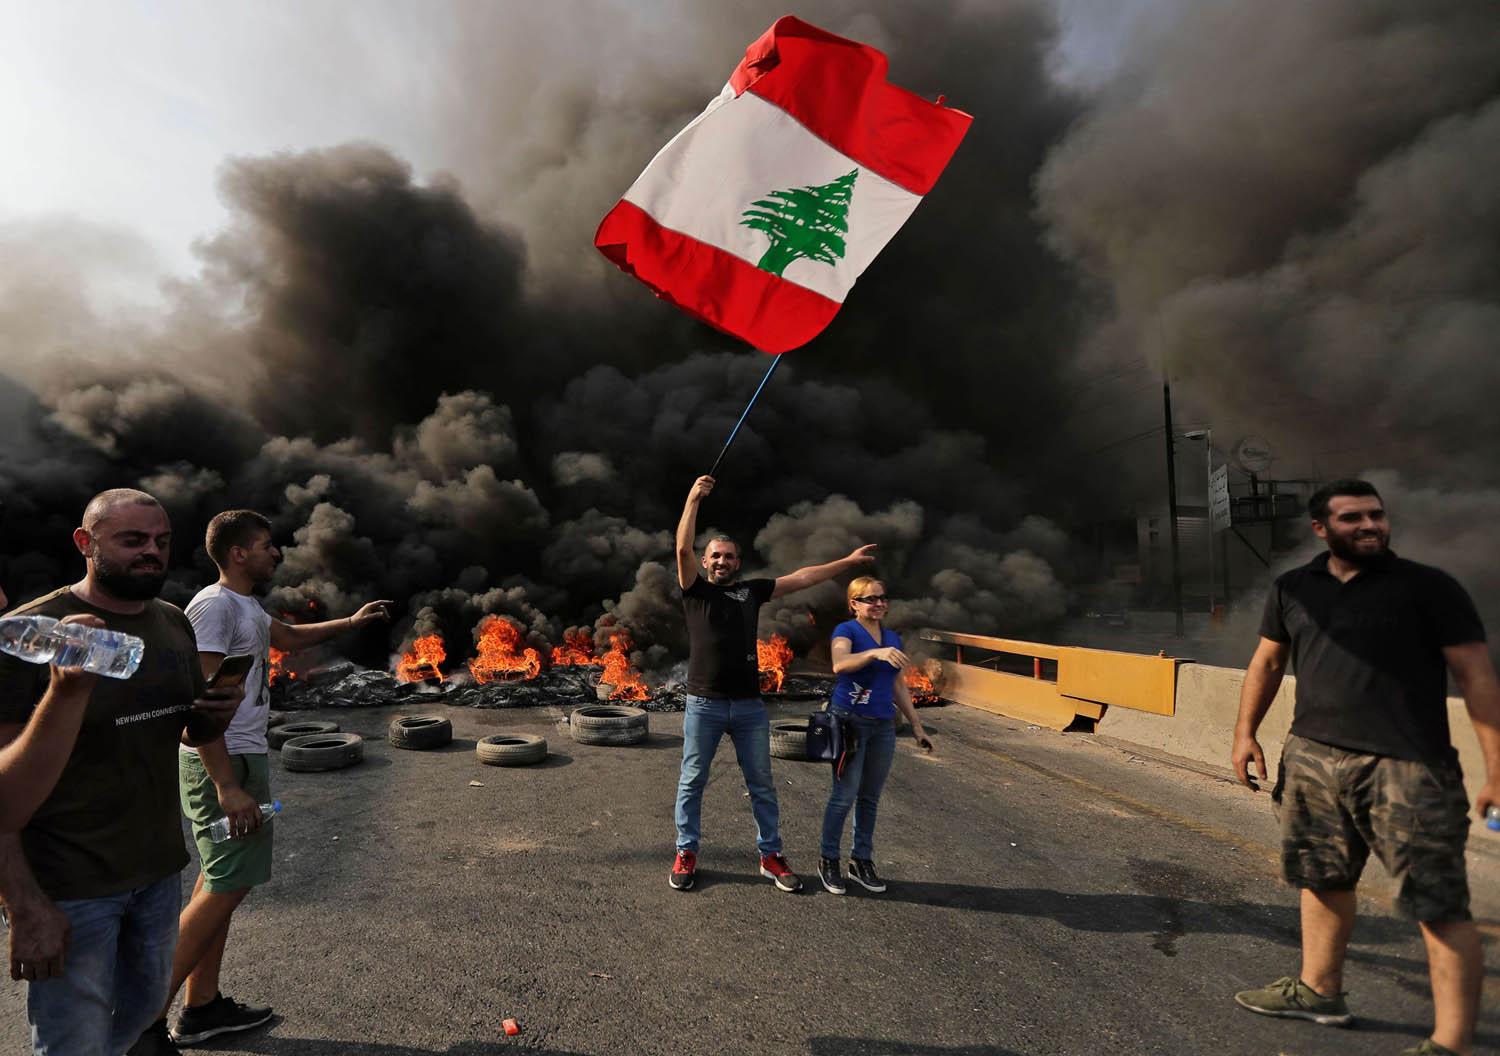 متظاهرون لبنانيون يقطعون الطريق باطارات مشتعلة في بيروت